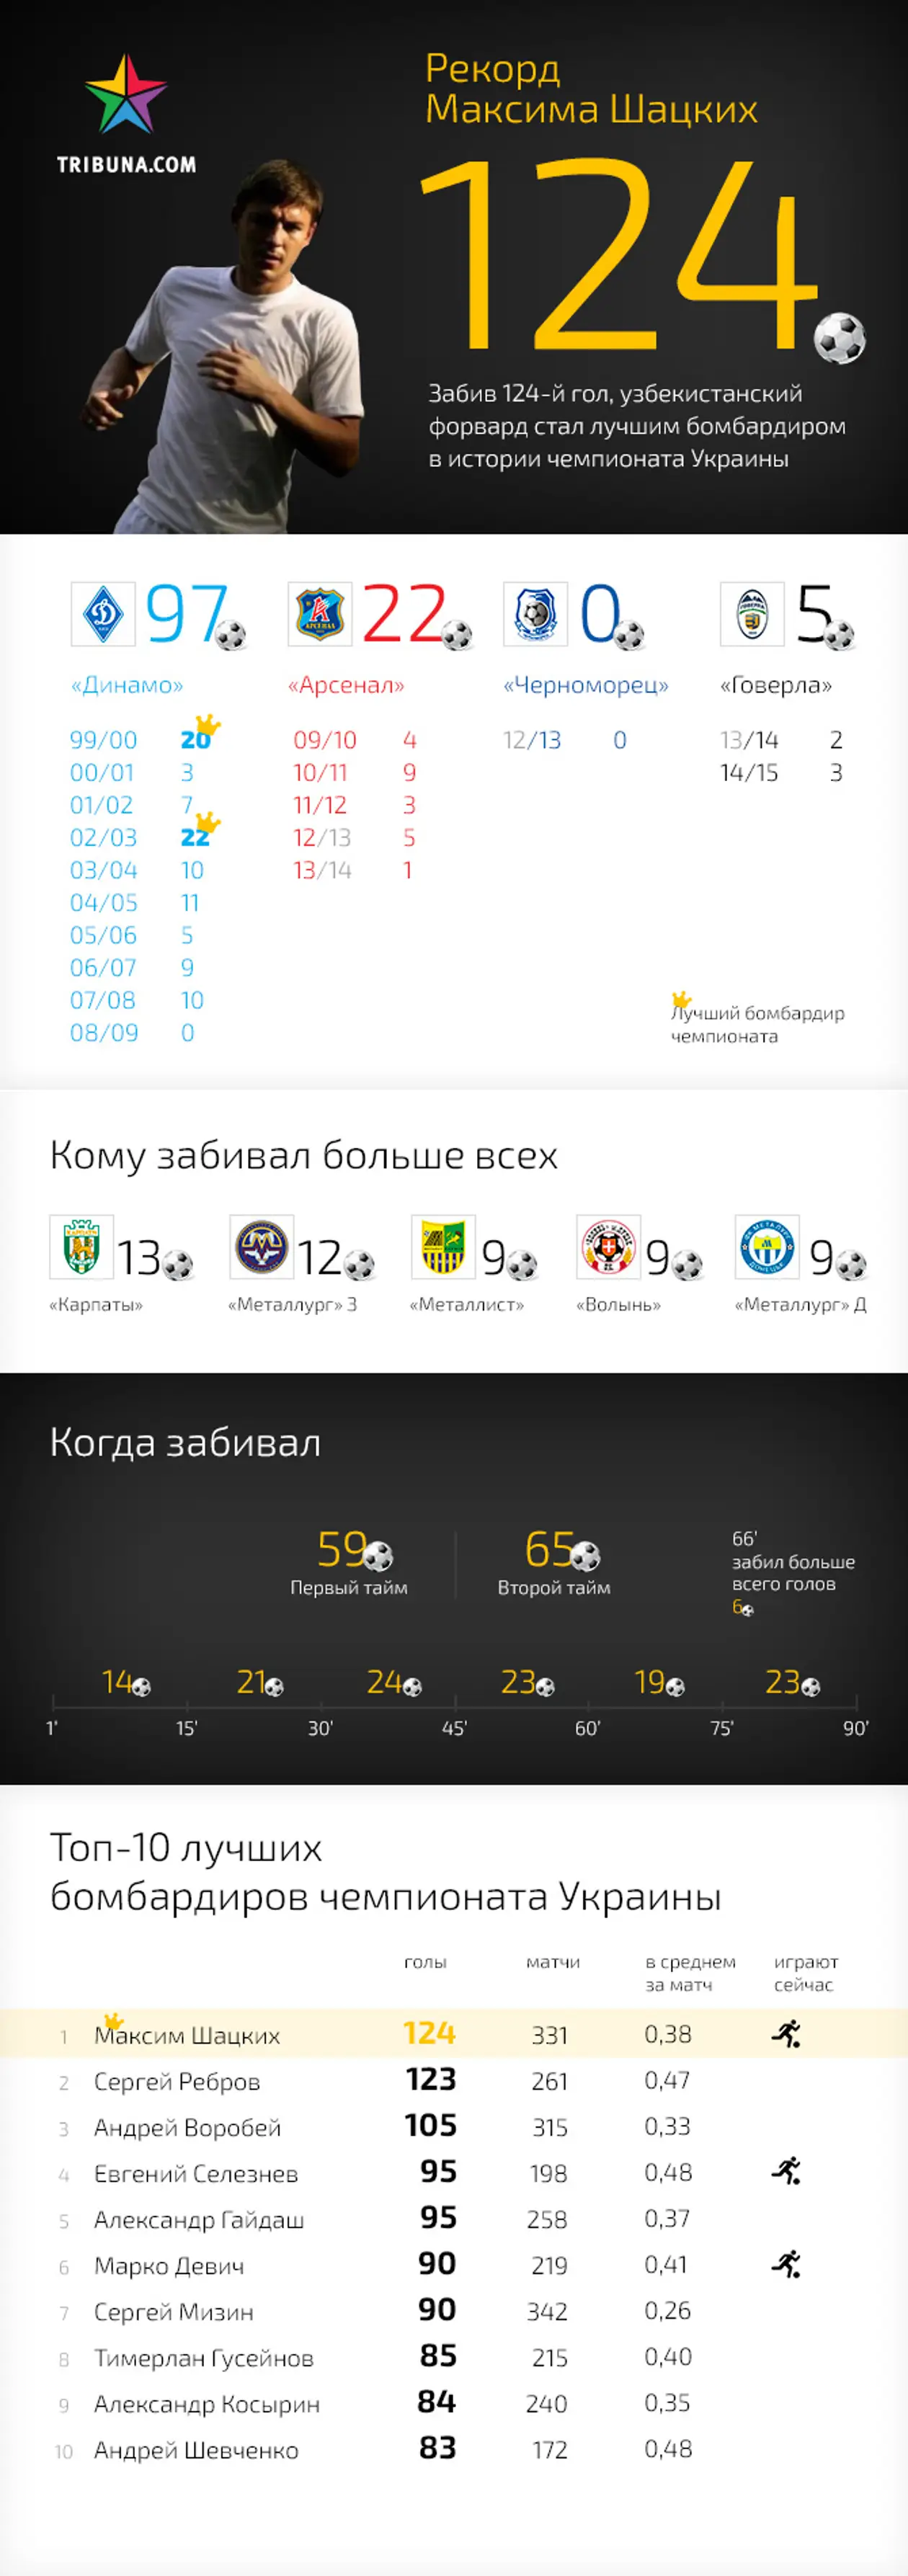 Все, что нужно знать о рекорде Максима Шацких. Инфографика Tribuna.com